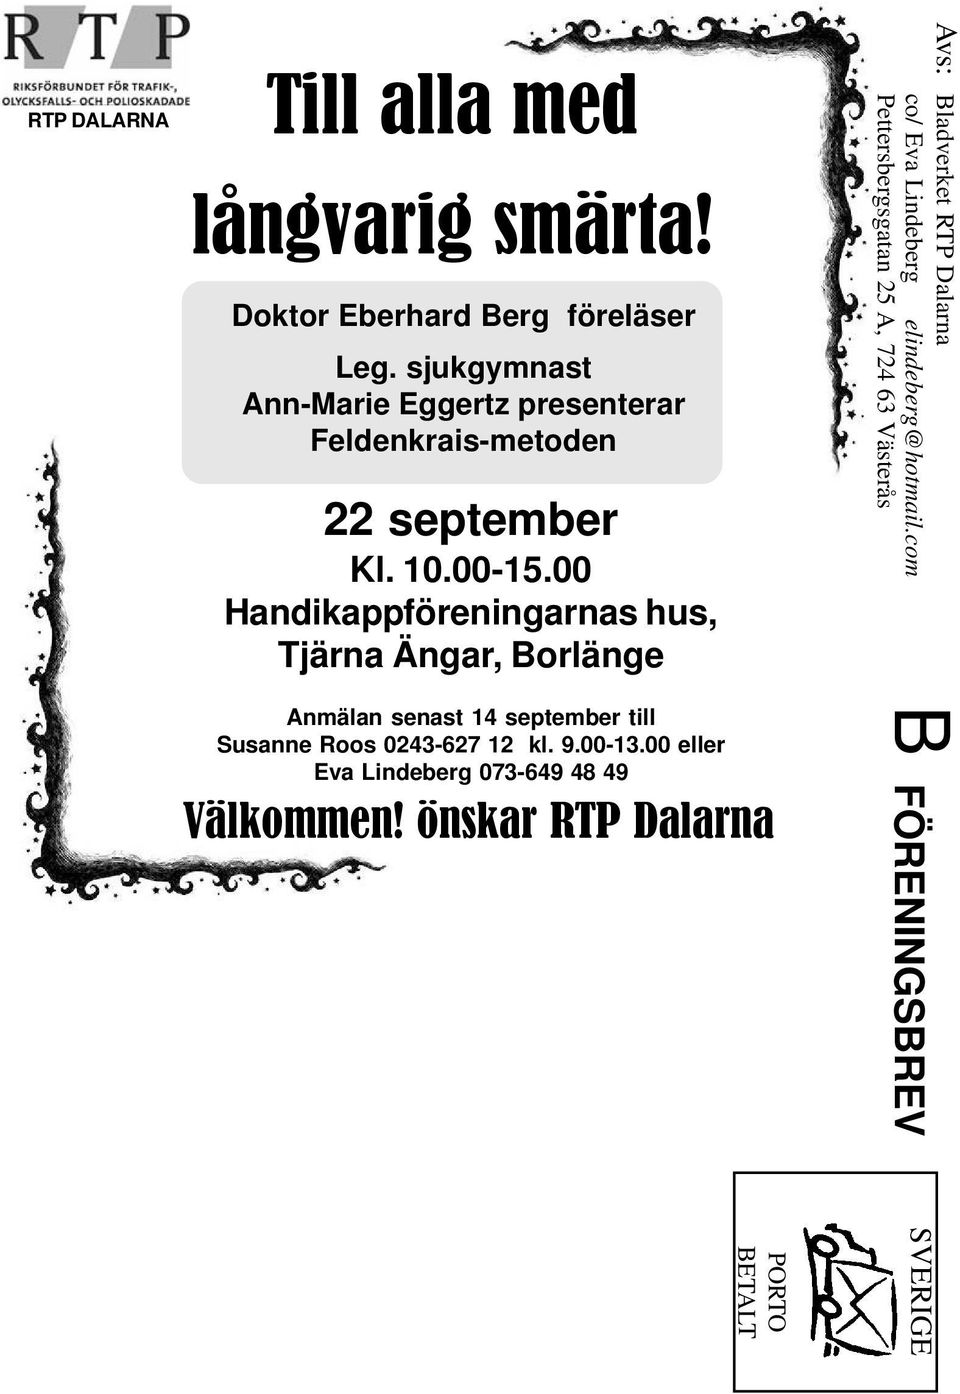 00 Handikappföreningarnas hus, Tjärna Ängar, Borlänge Anmälan senast 14 september till Susanne Roos 0243-627 12 kl. 9.00-13.